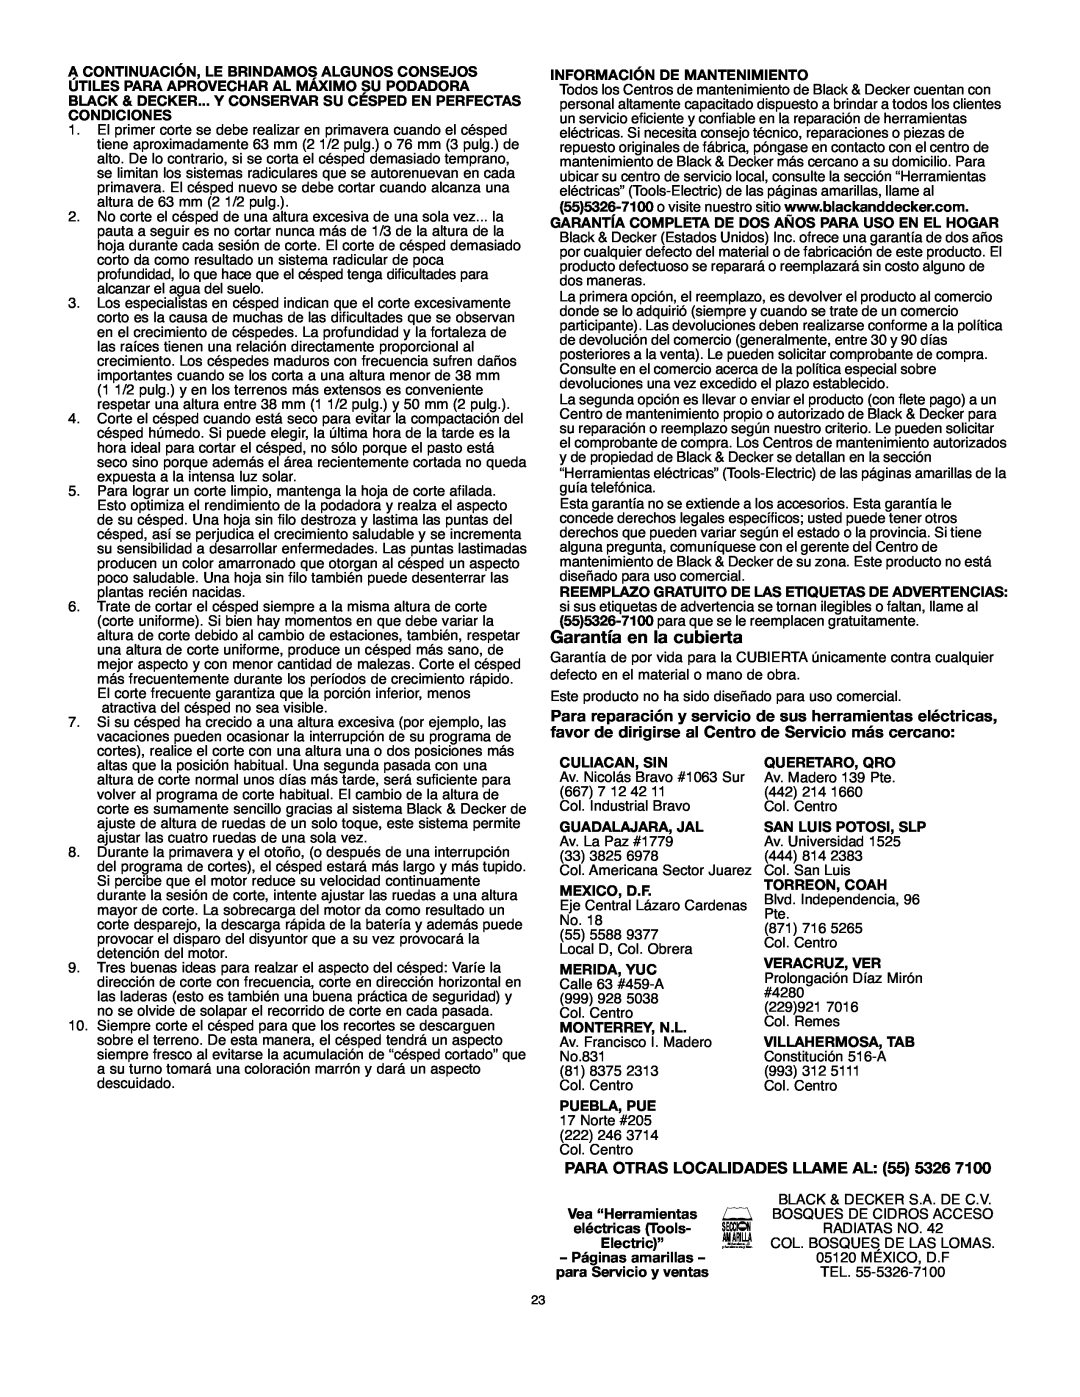 Black & Decker MM575 instruction manual Garantía en la cubierta, PARA OTRAS LOCALIDADES LLAME AL 55 5326 